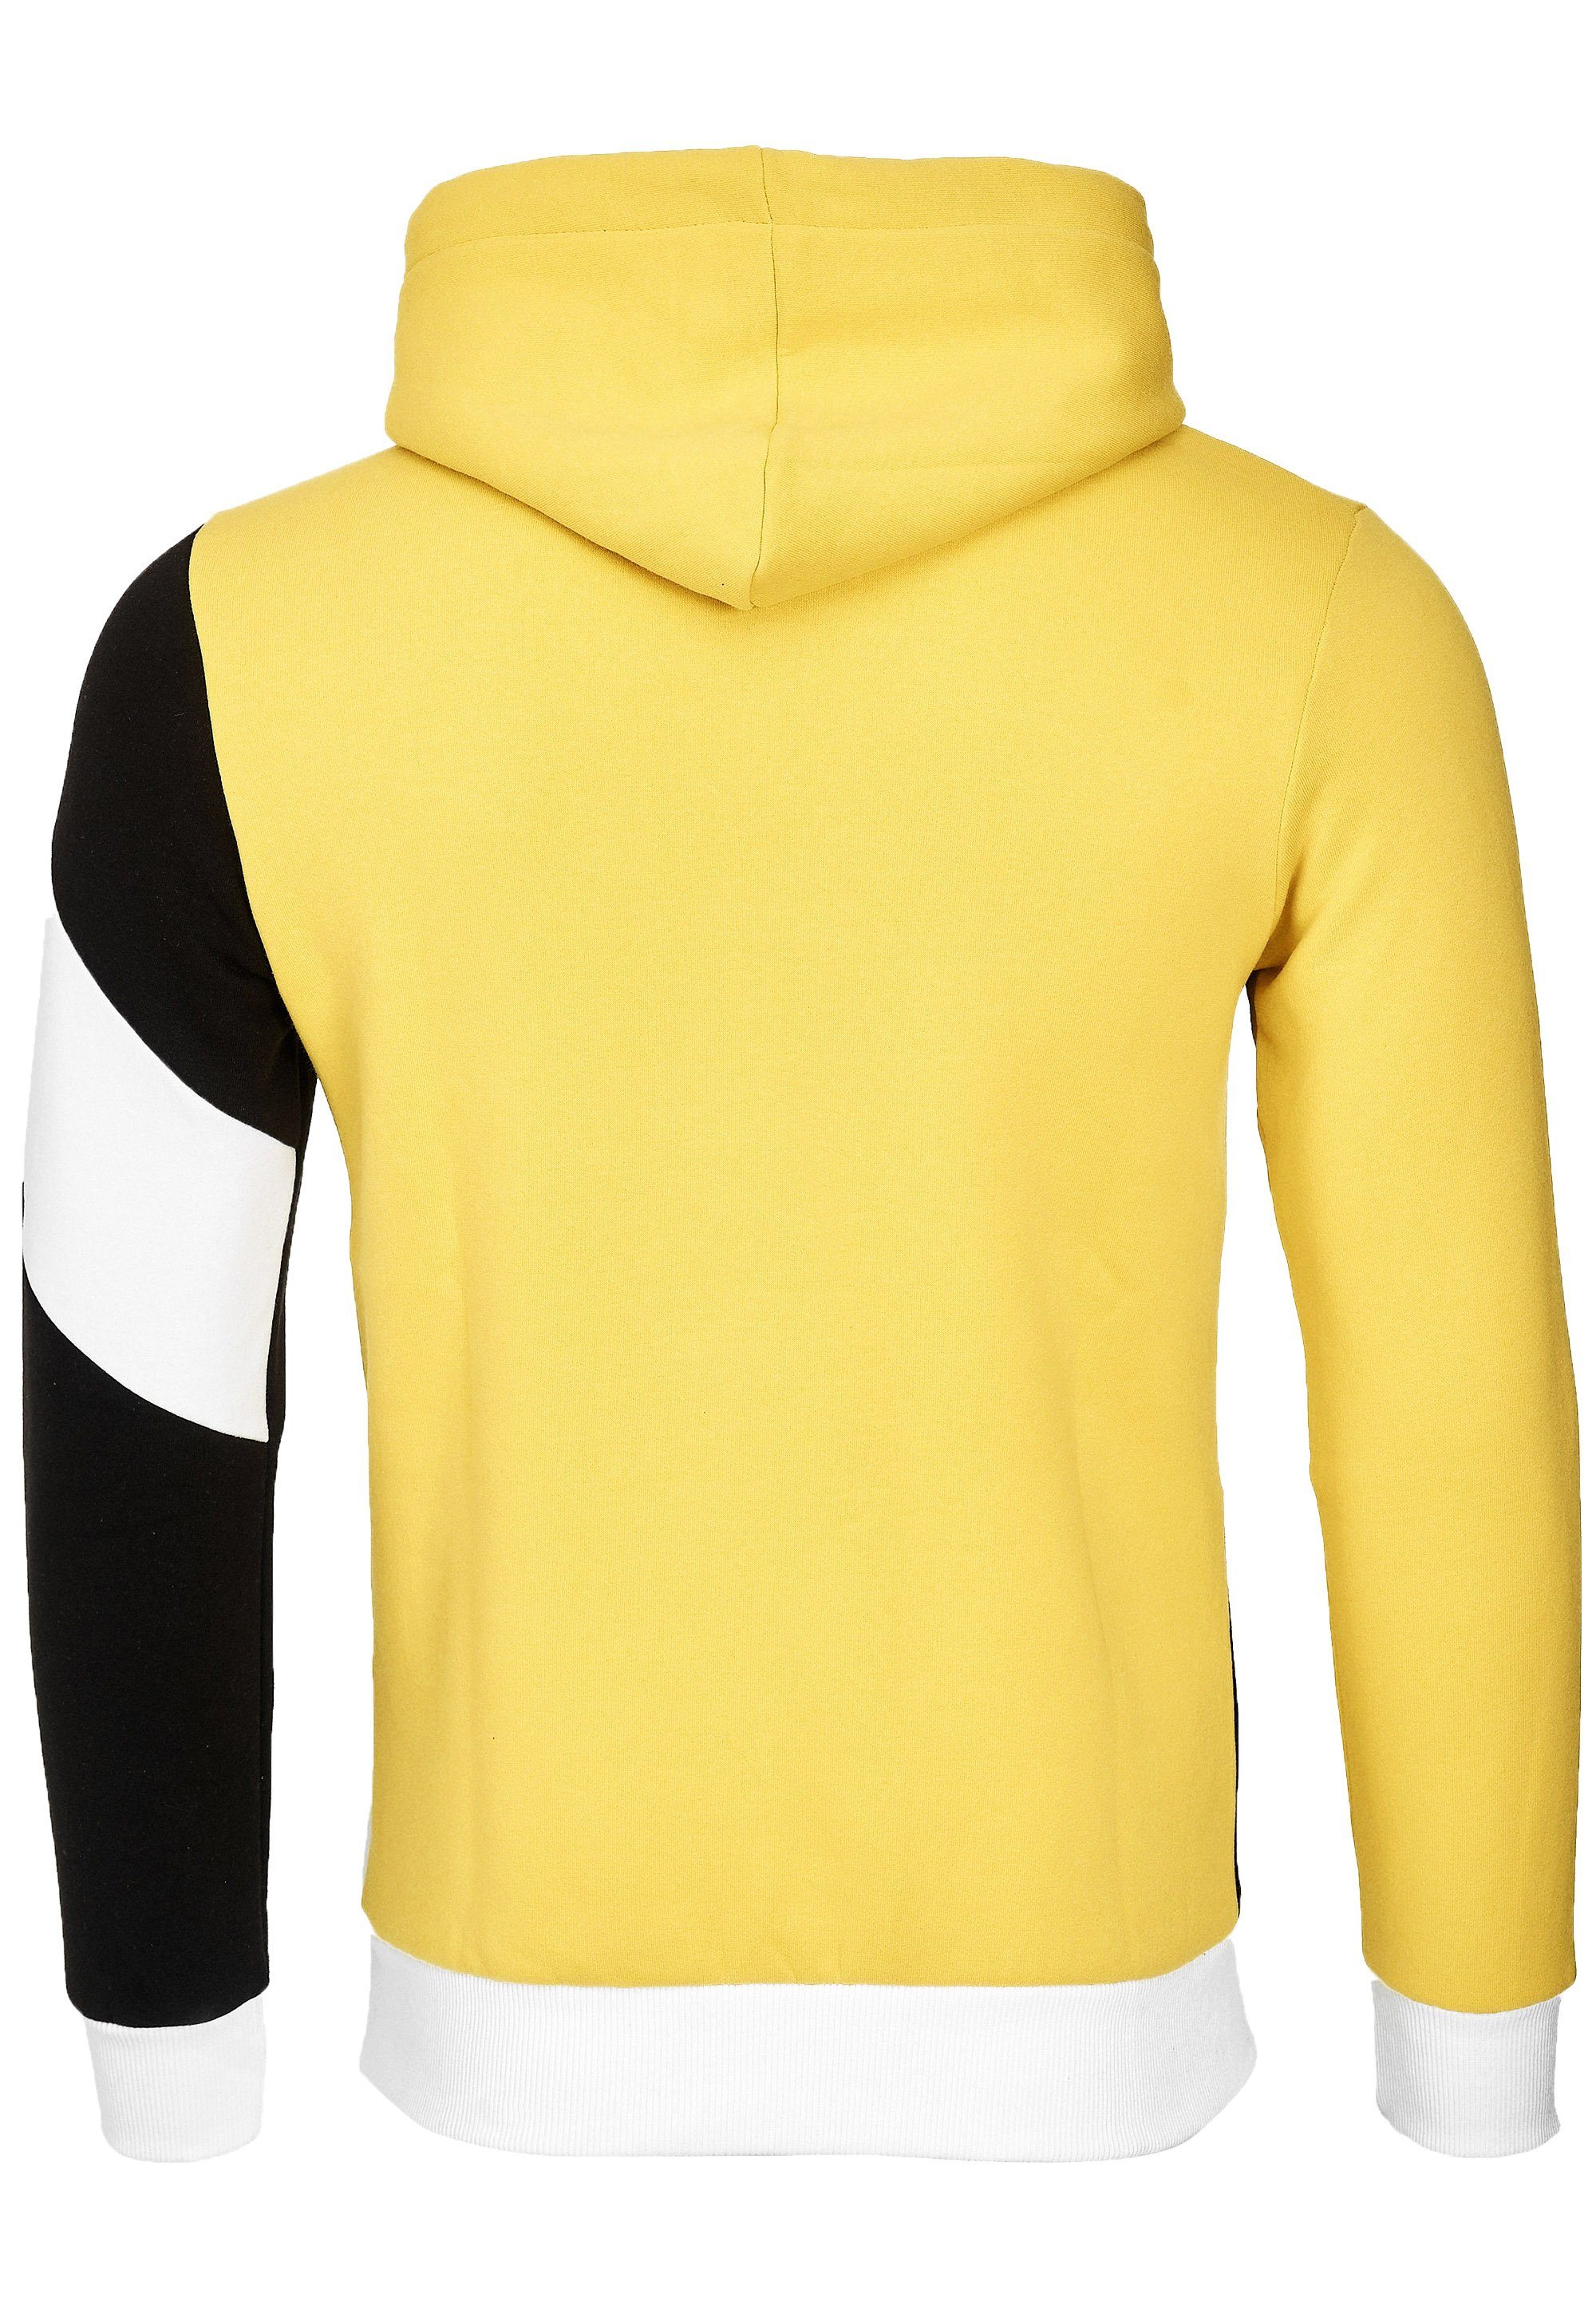 Rusty Neal Kapuzensweatshirt Design sportlichem gelb-schwarz in